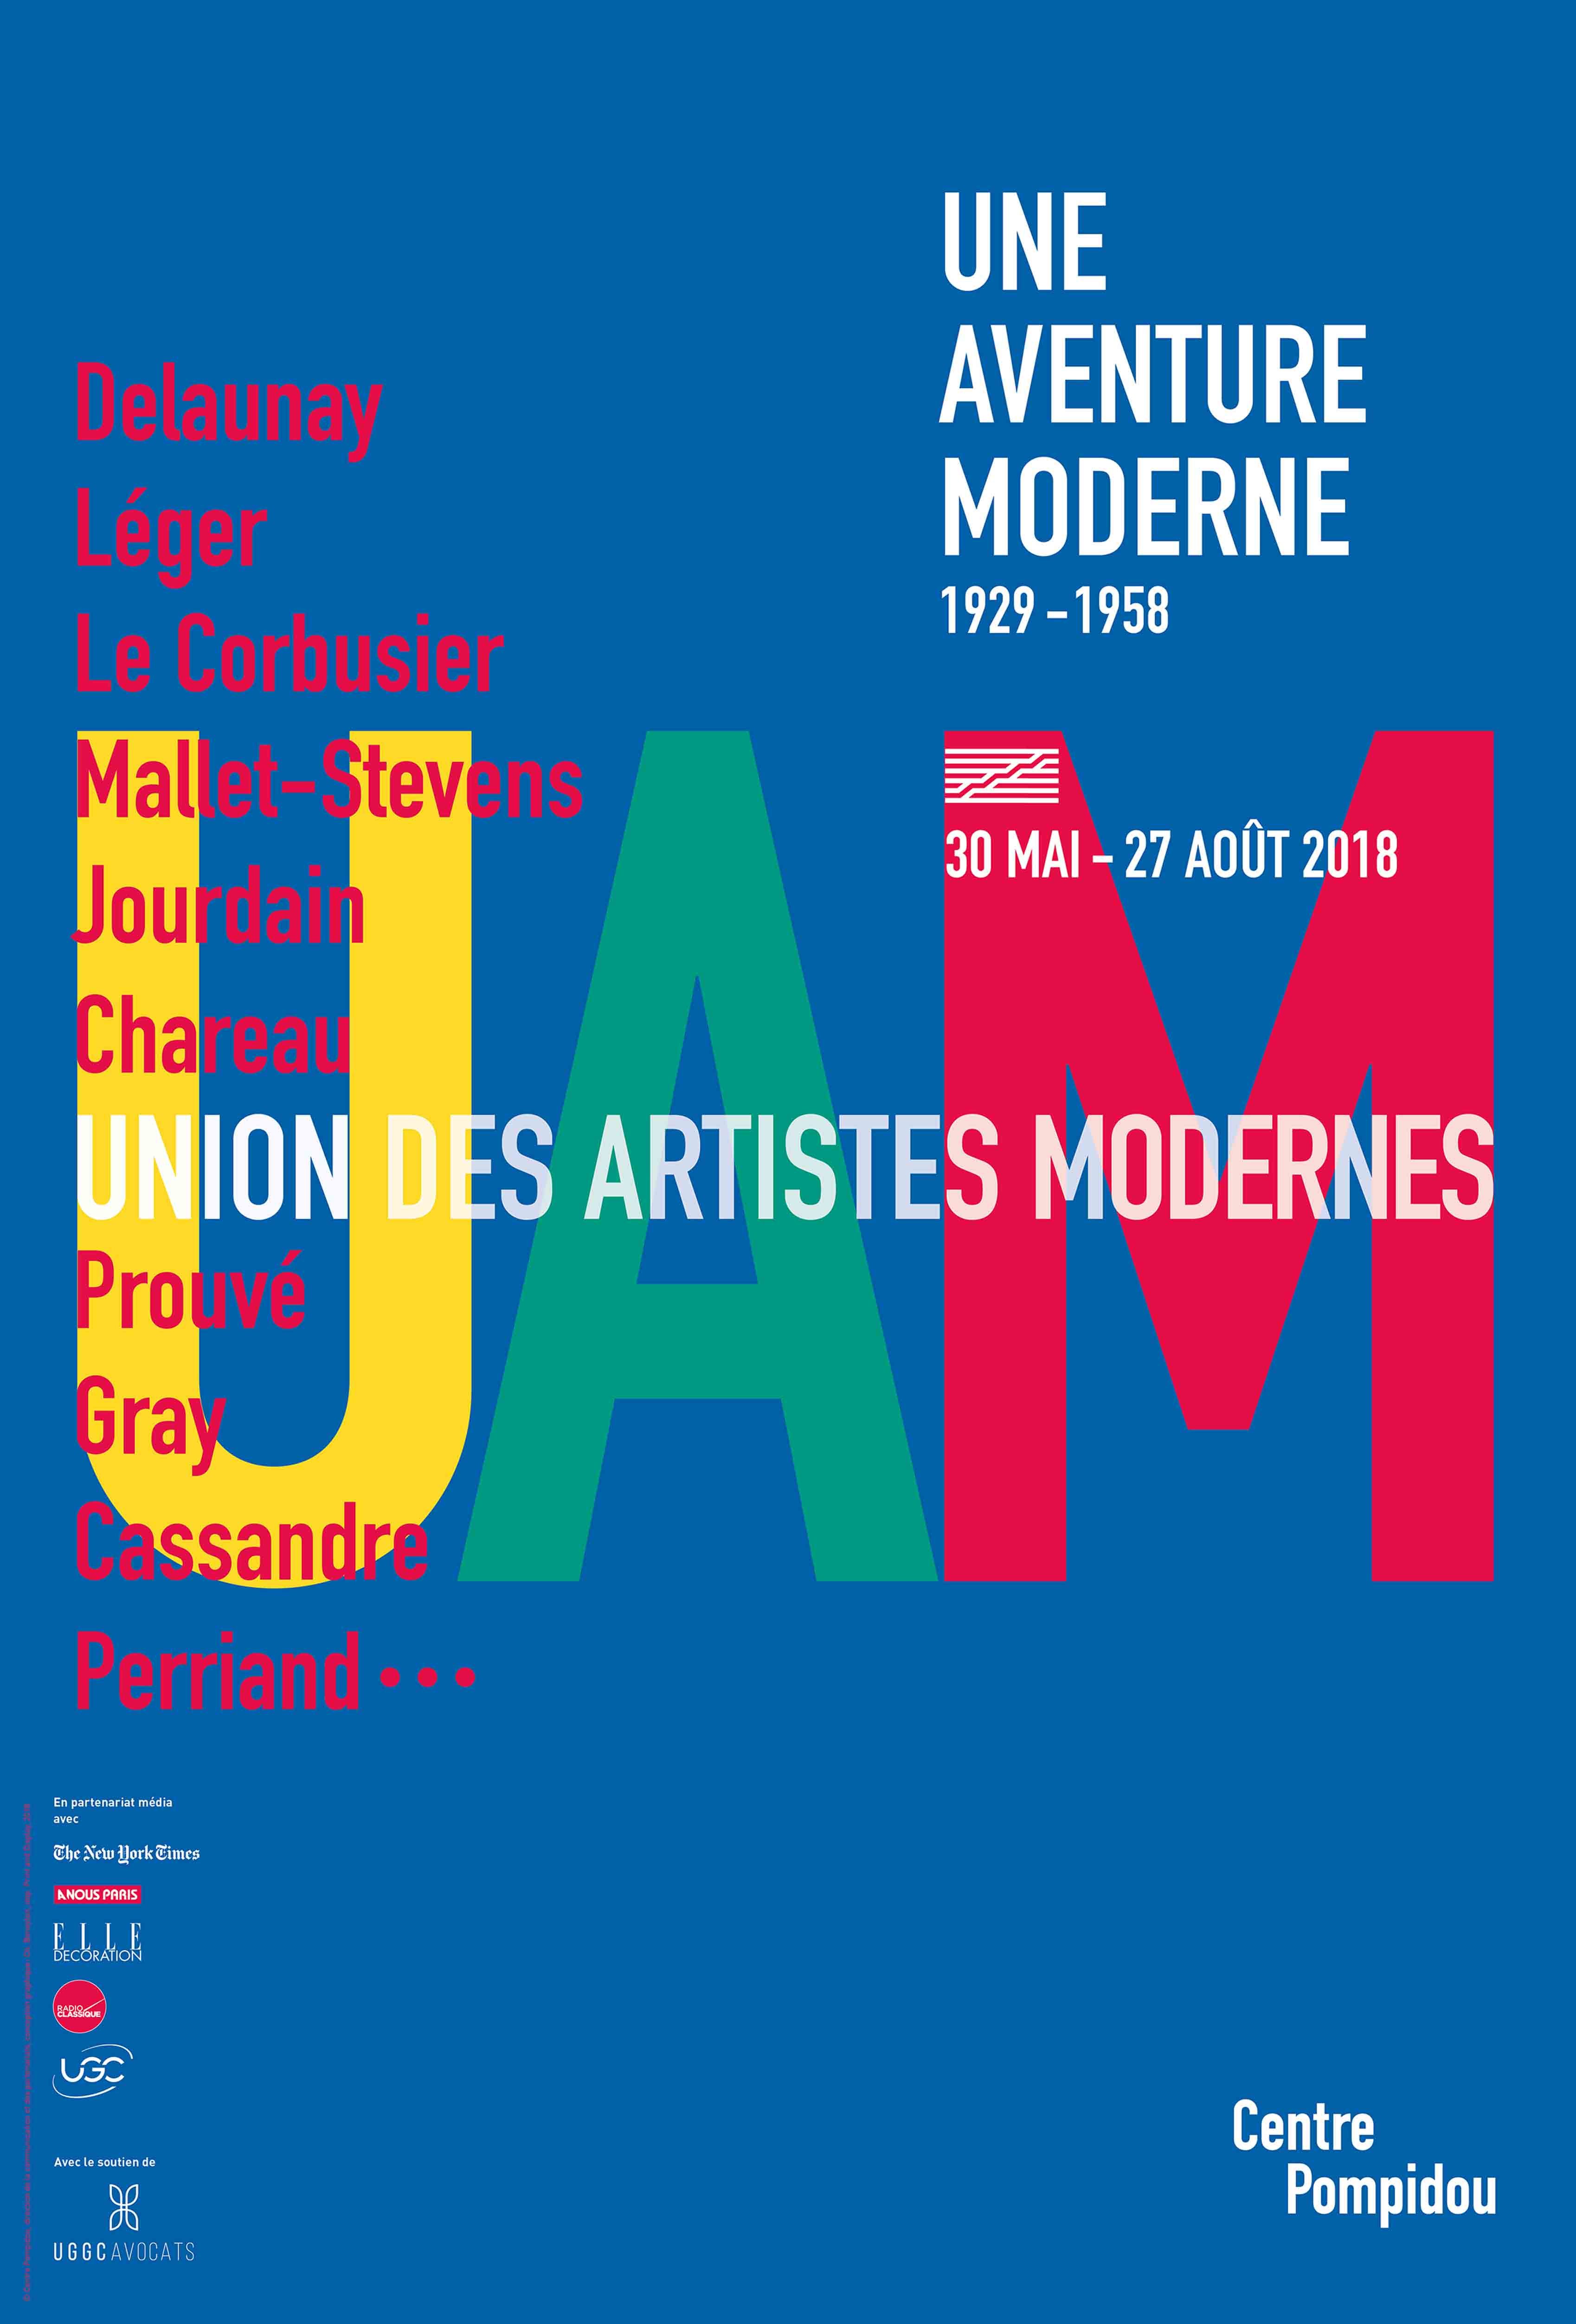 Jean Prouvé, Robert Mallet-Stevens, Charlotte Perriand... Les maîtres du modernisme débarquent à Pompidou